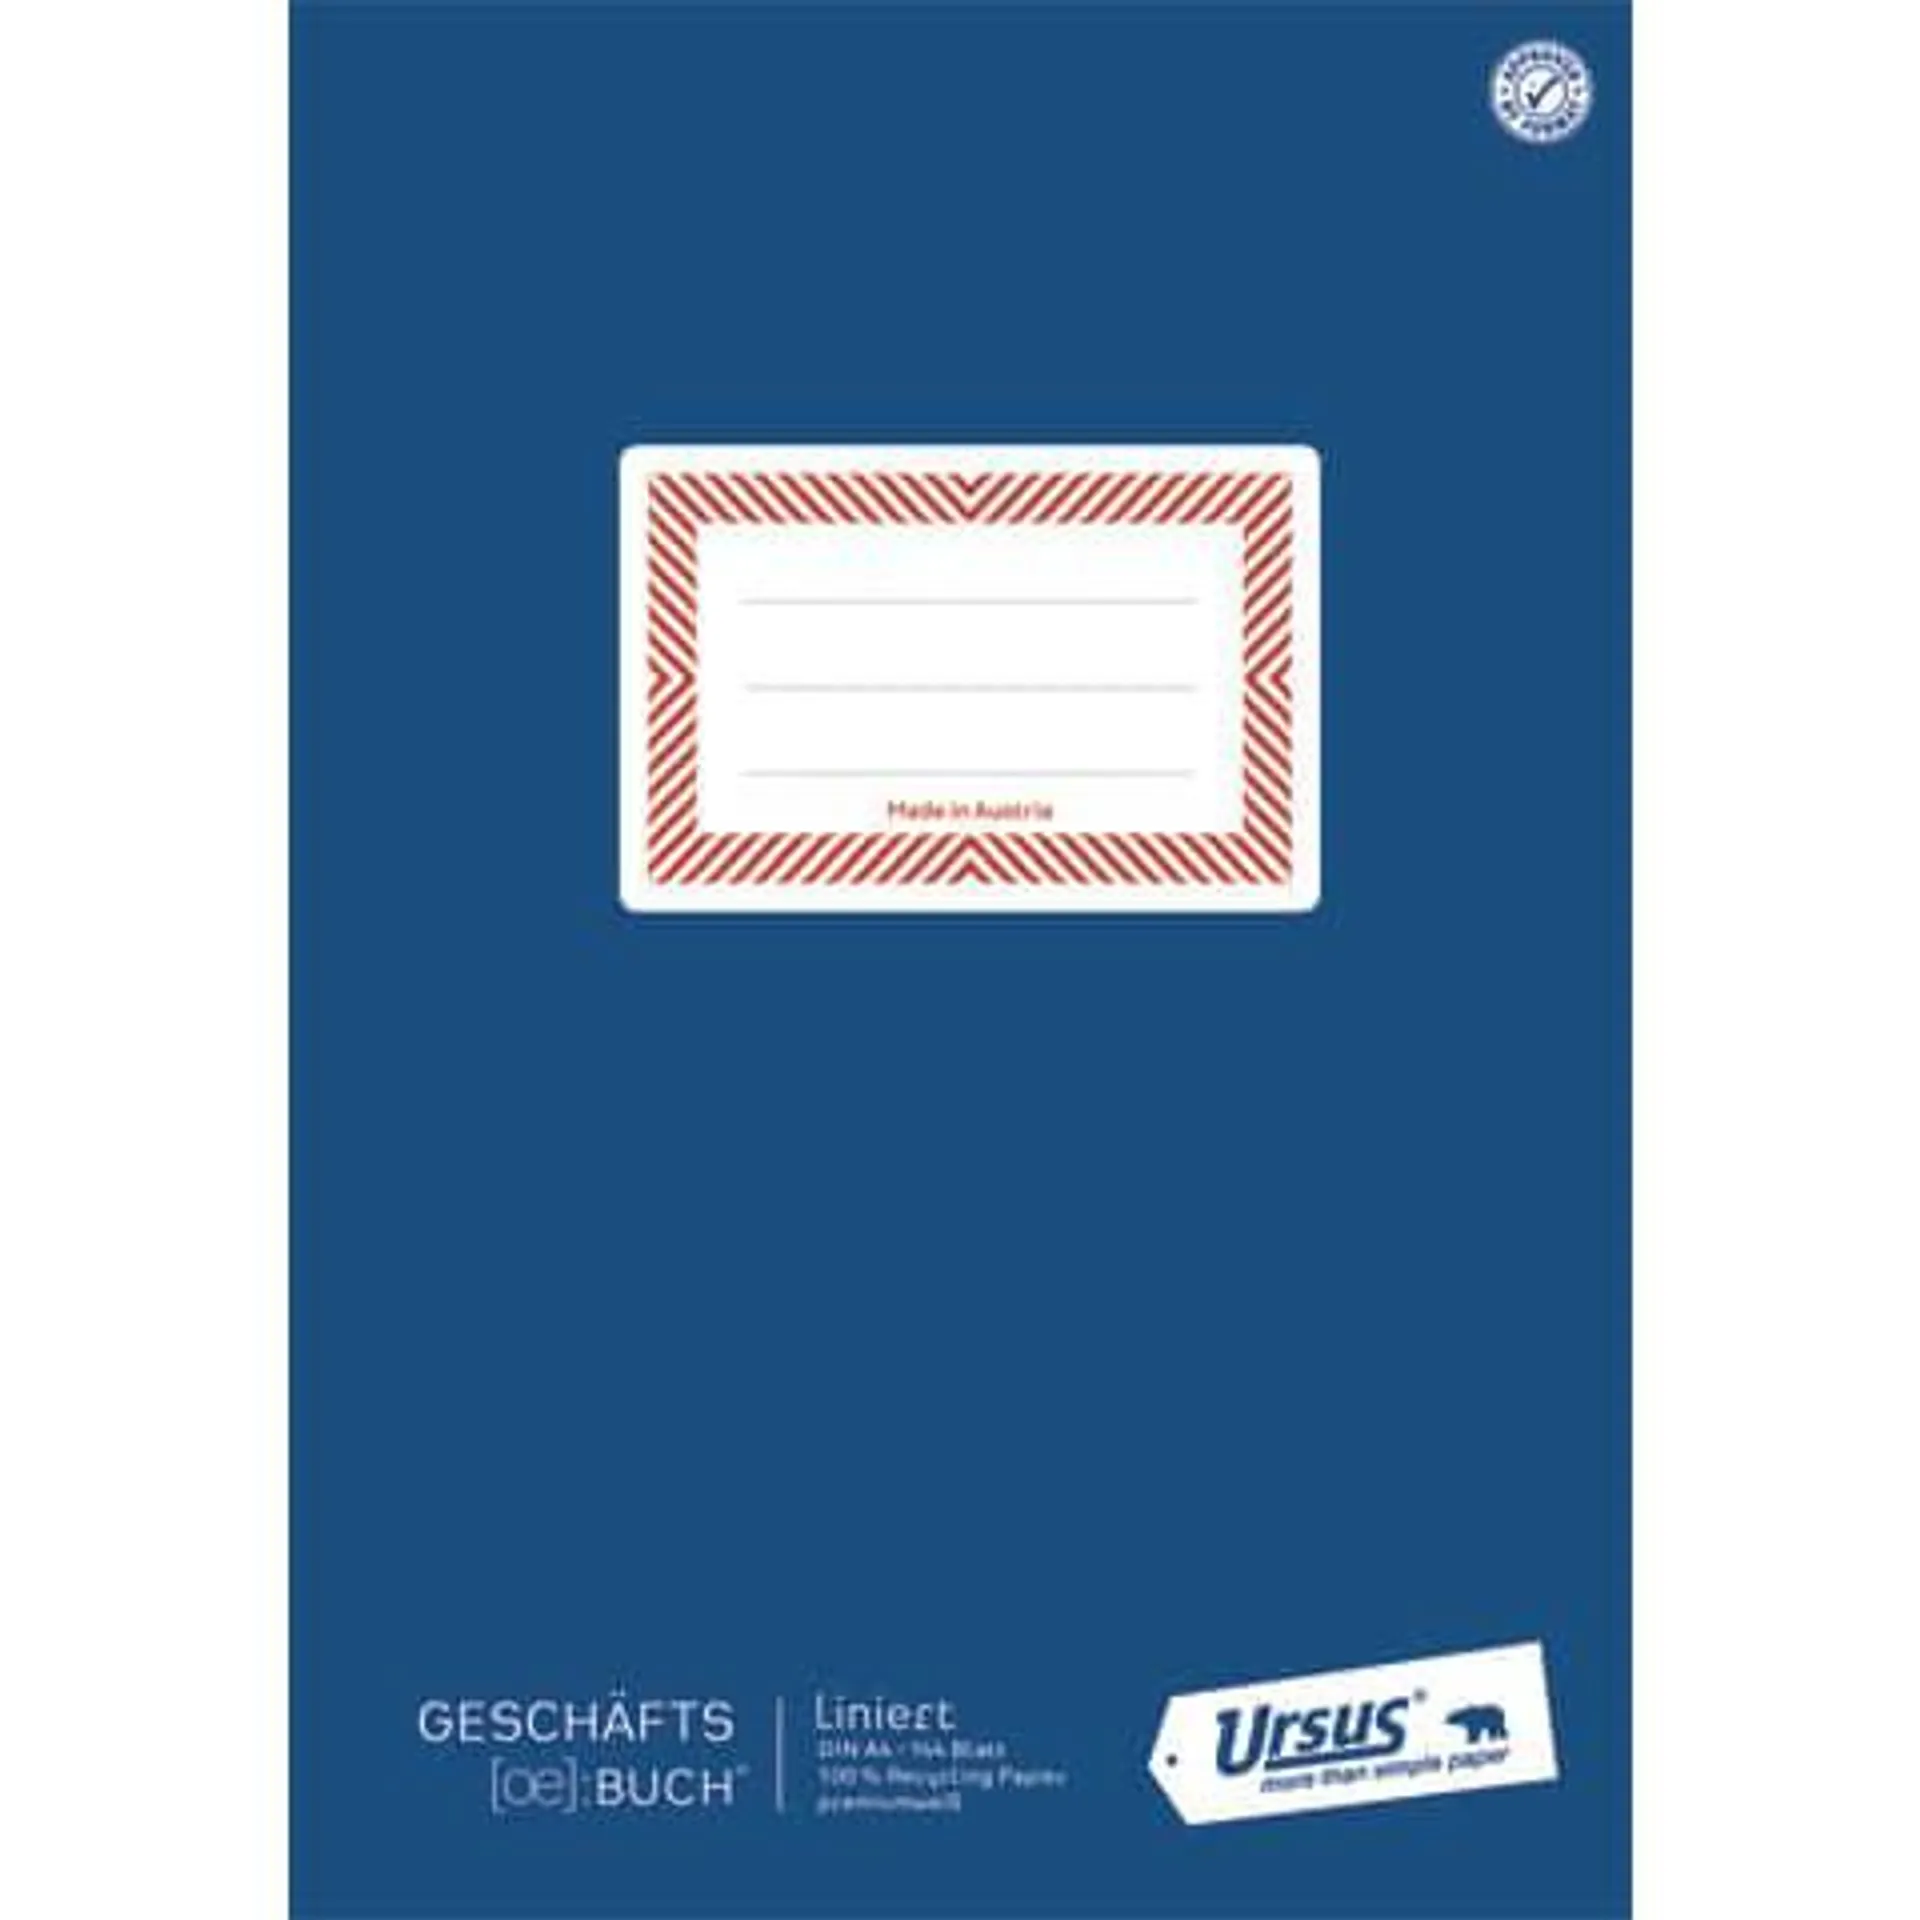 Geschäftsbuch A4 144Blatt liniert kaschiert URSUS OE 608385010